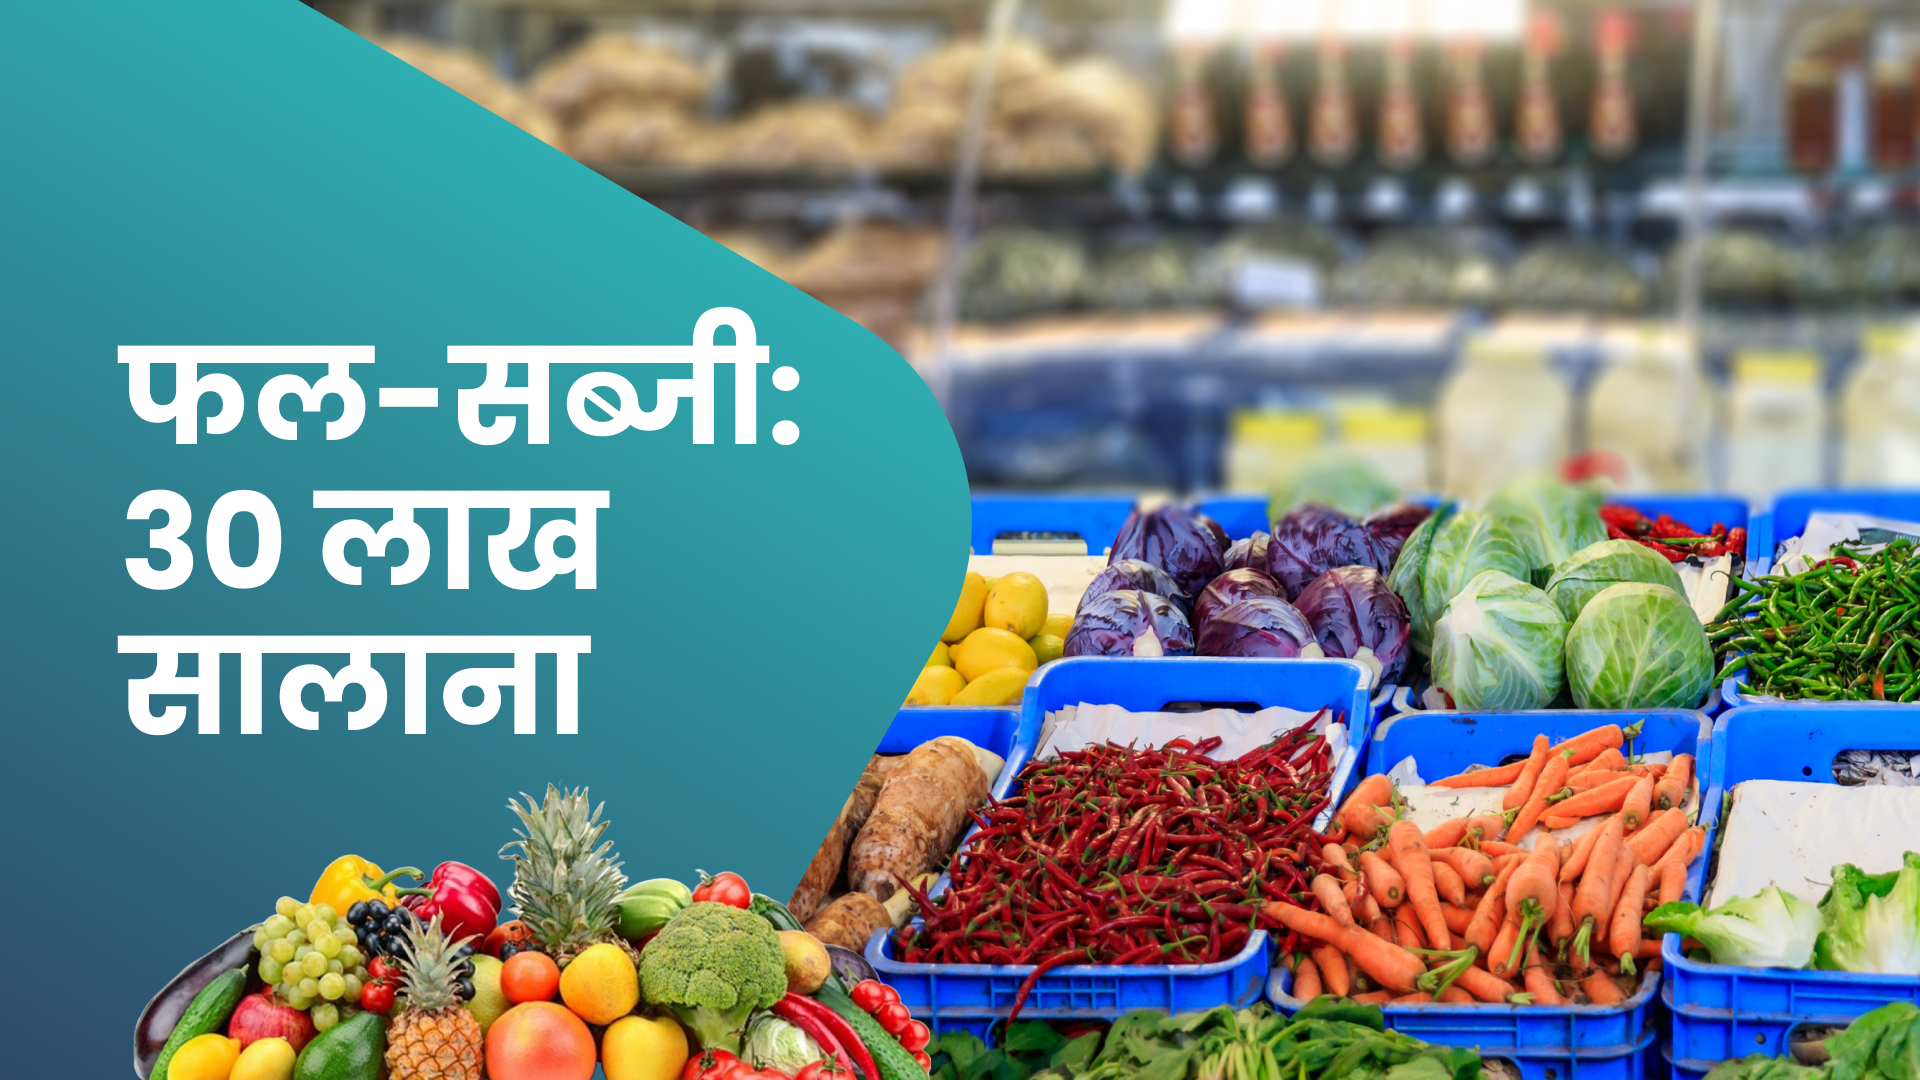 कोर्स ट्रेलर: फल और सब्जी का उद्योग - सालाना ₹16 से 30 लाख कमाएं। अधिक जानने के लिए देखें।